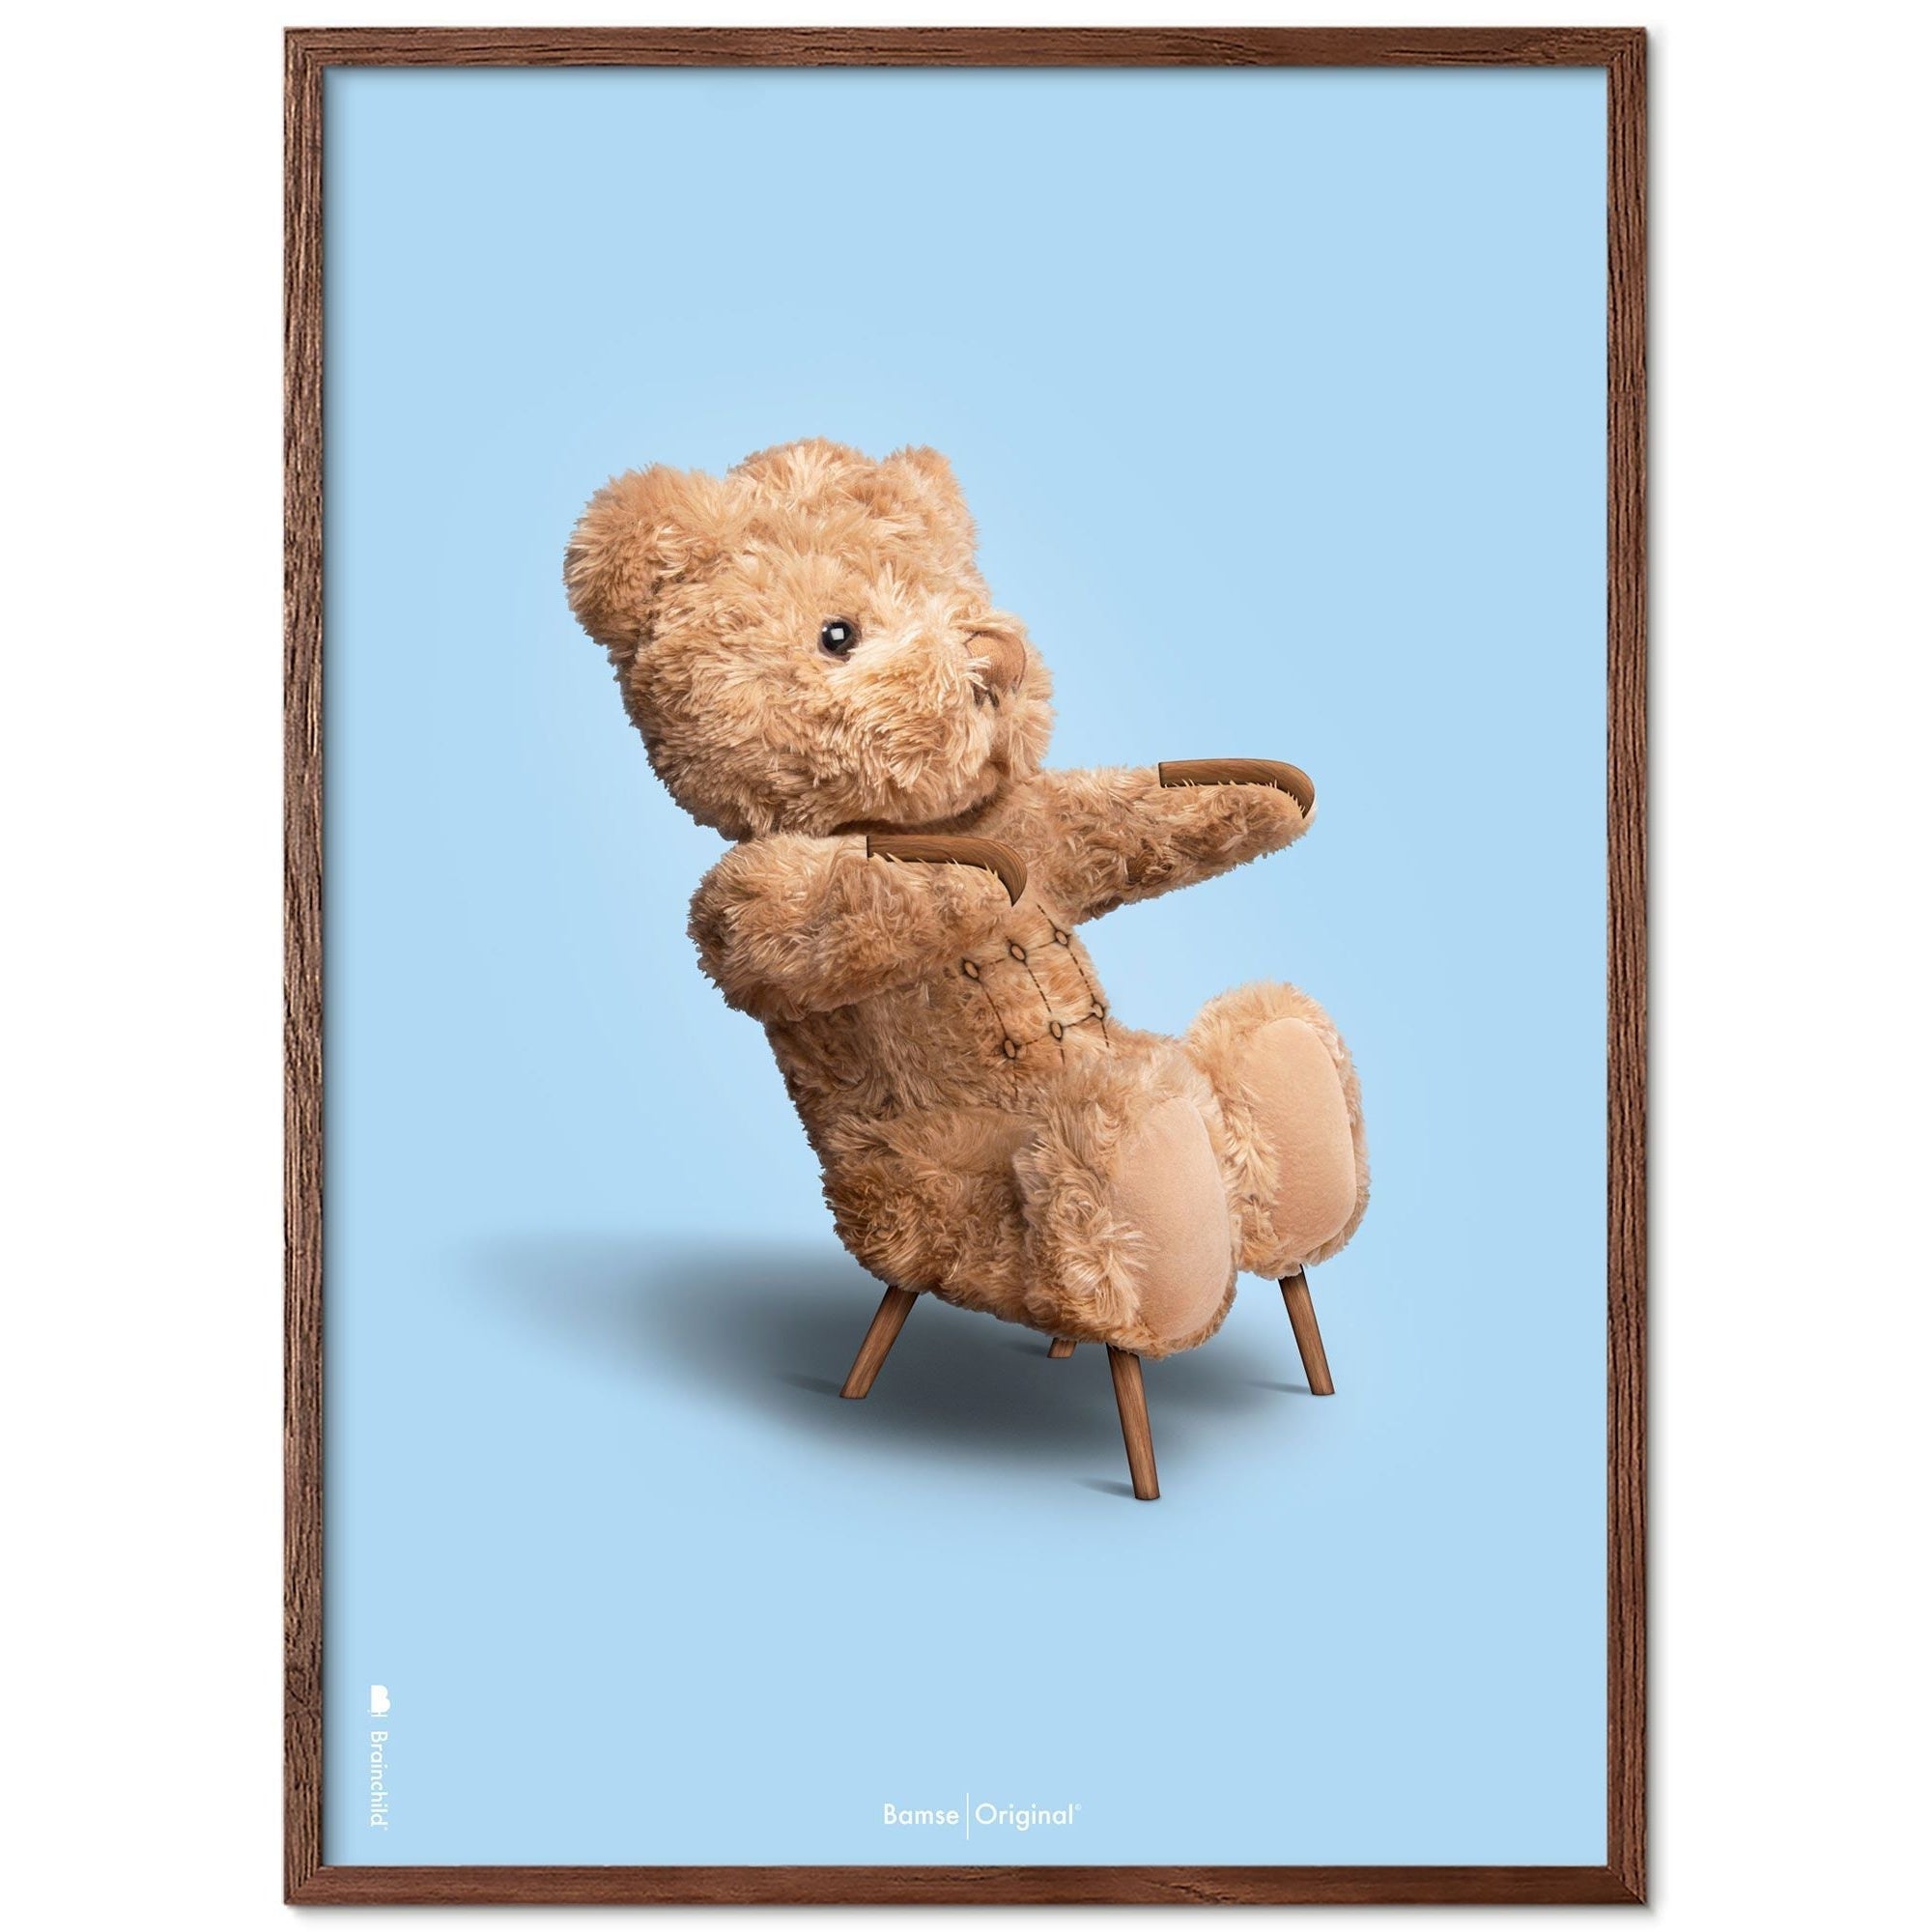 Brainchild Teddybär Classic Poster dunkler Holzrahmen Widder A5, hellblauer Hintergrund